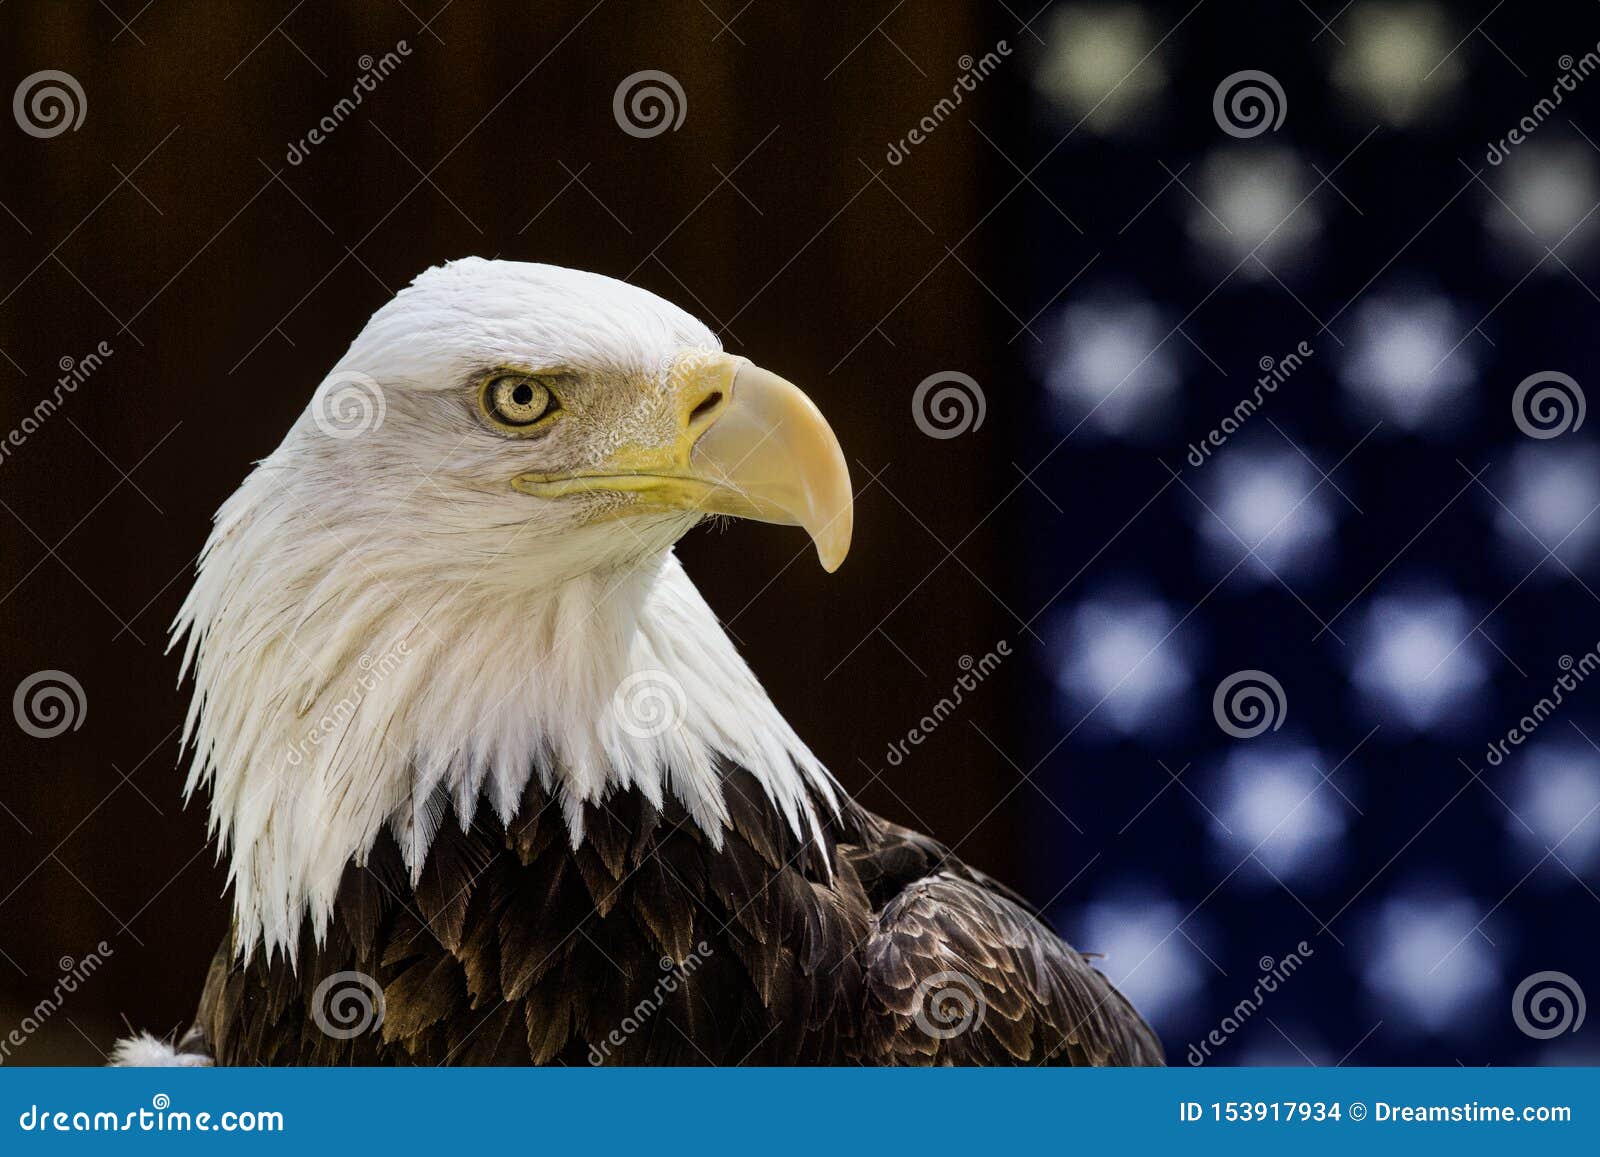 在一面美国国旗前被栖息的美丽的白头鹰. 一只被抢救的白头鹰以前被栖息和美国国旗在一个地方鸟展示